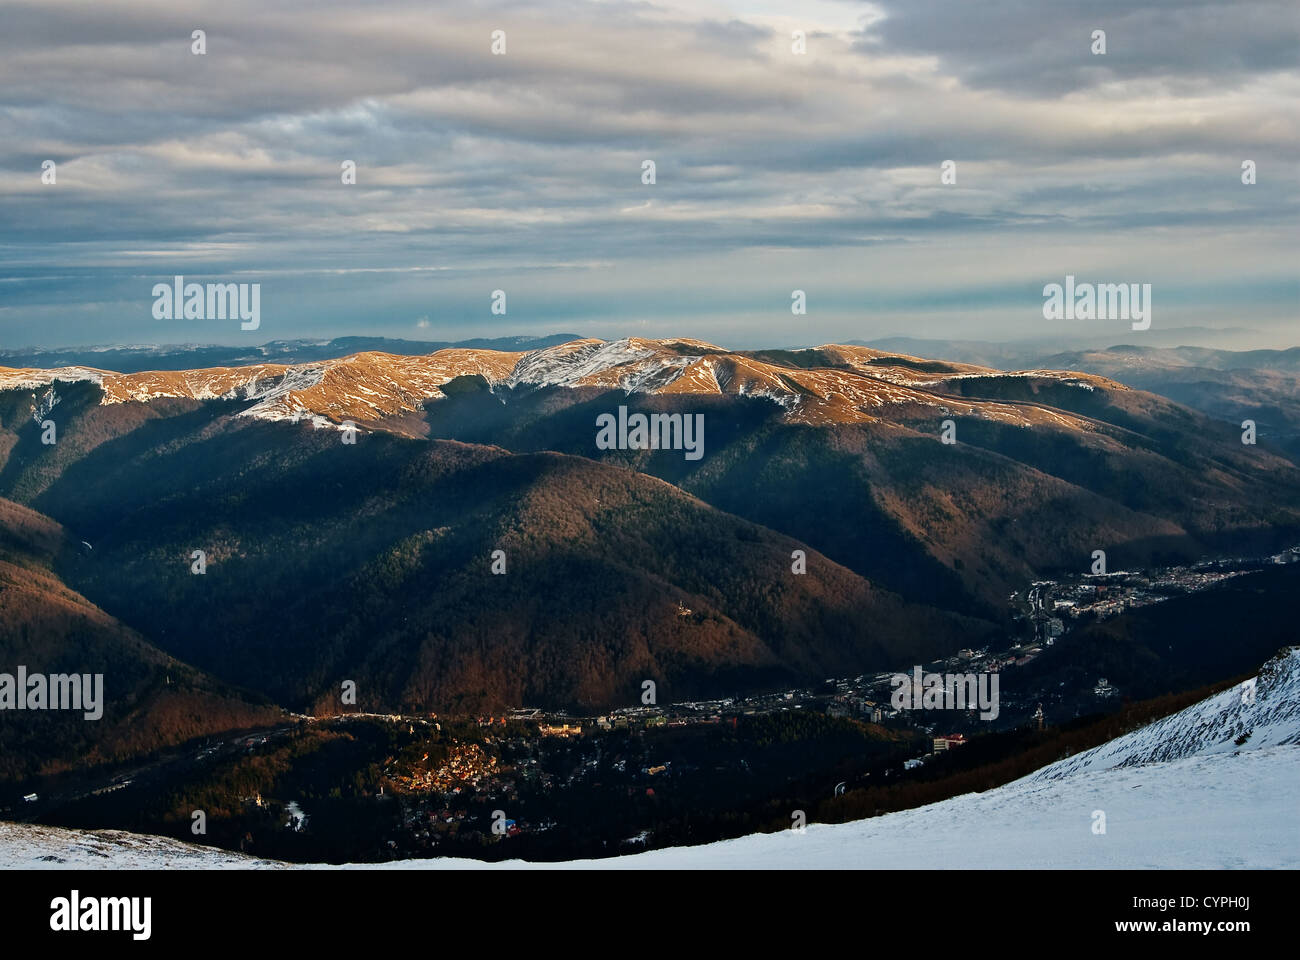 Paesaggio invernale con la città di Sinaia, città di montagna alla base delle montagne di Bucegi, in valey Prahova - Romania Foto Stock